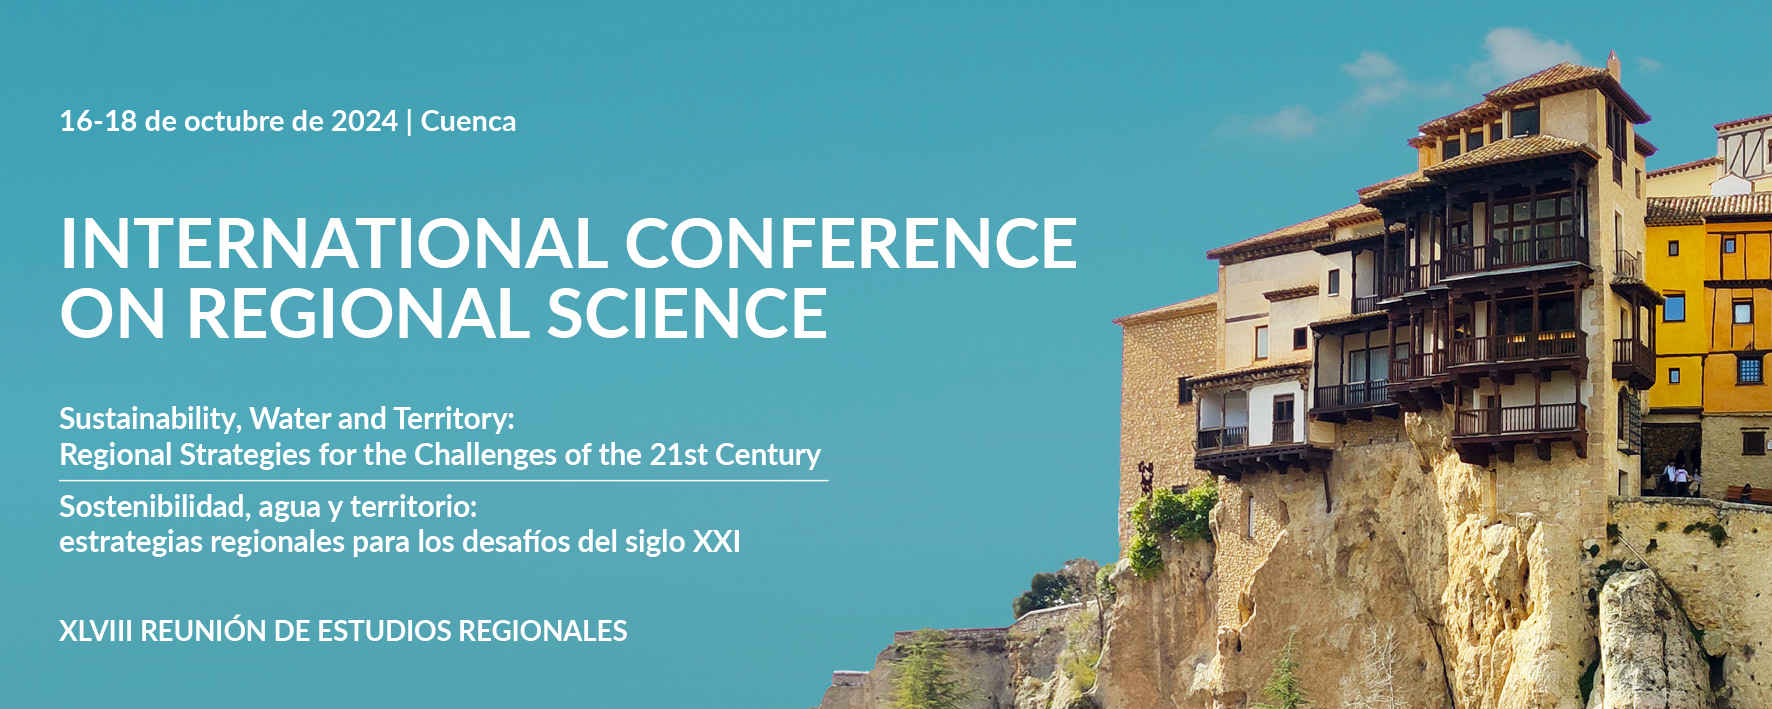 Special Sessions en la XLVIII Reunión de Estudios Regionales – Cuenca, 16-18 de octubre de 2024